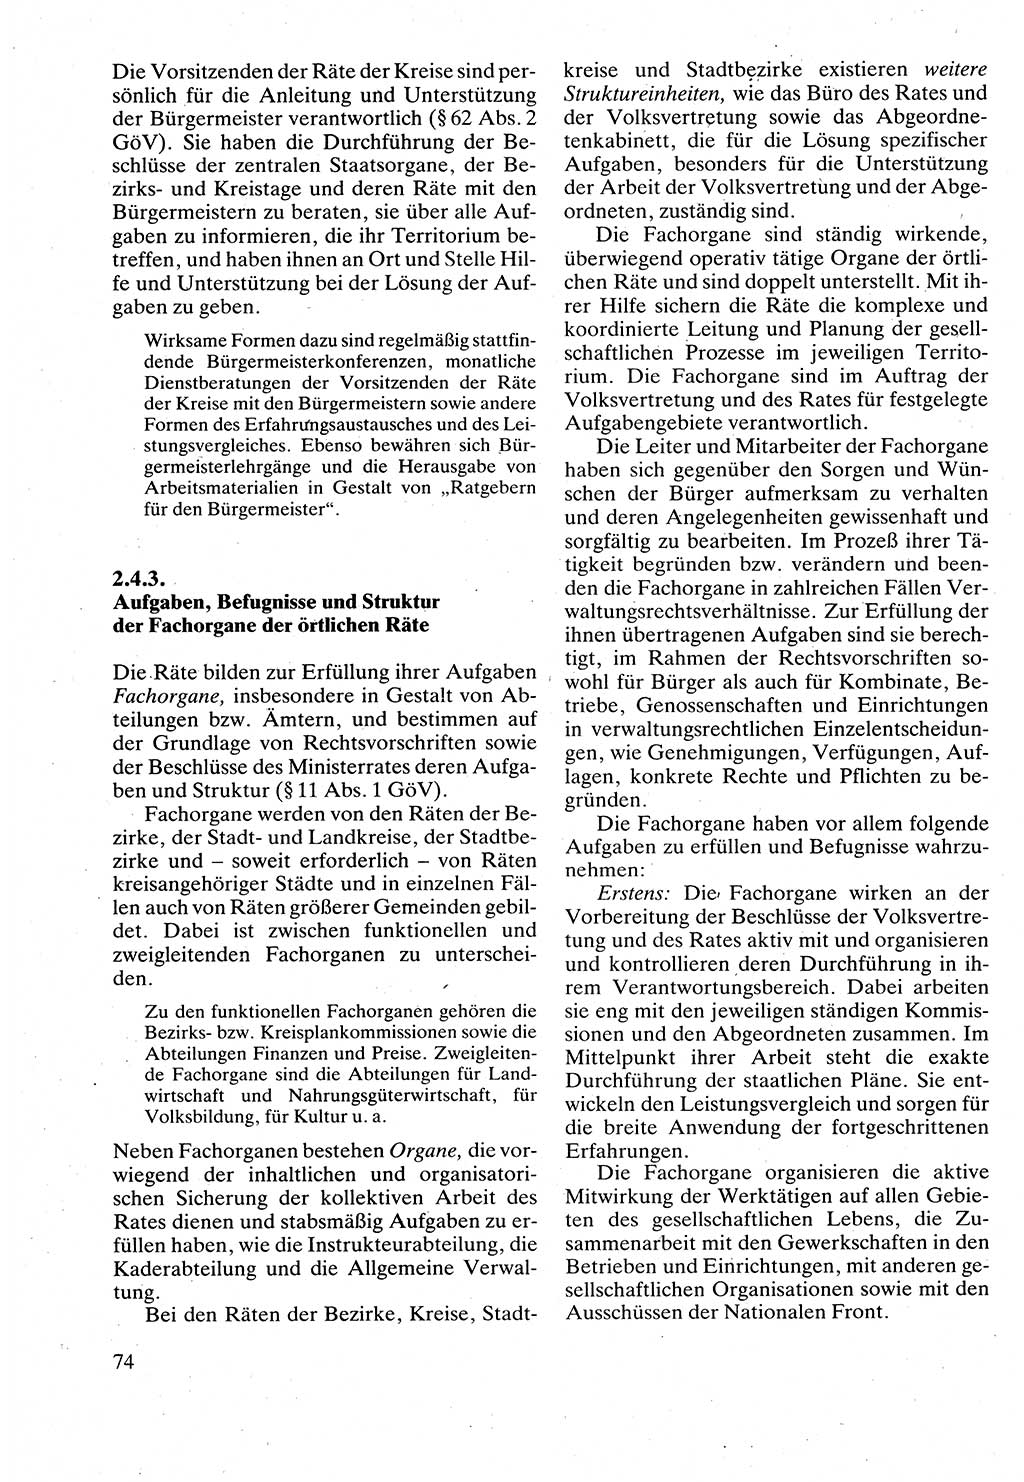 Verwaltungsrecht [Deutsche Demokratische Republik (DDR)], Lehrbuch 1988, Seite 74 (Verw.-R. DDR Lb. 1988, S. 74)